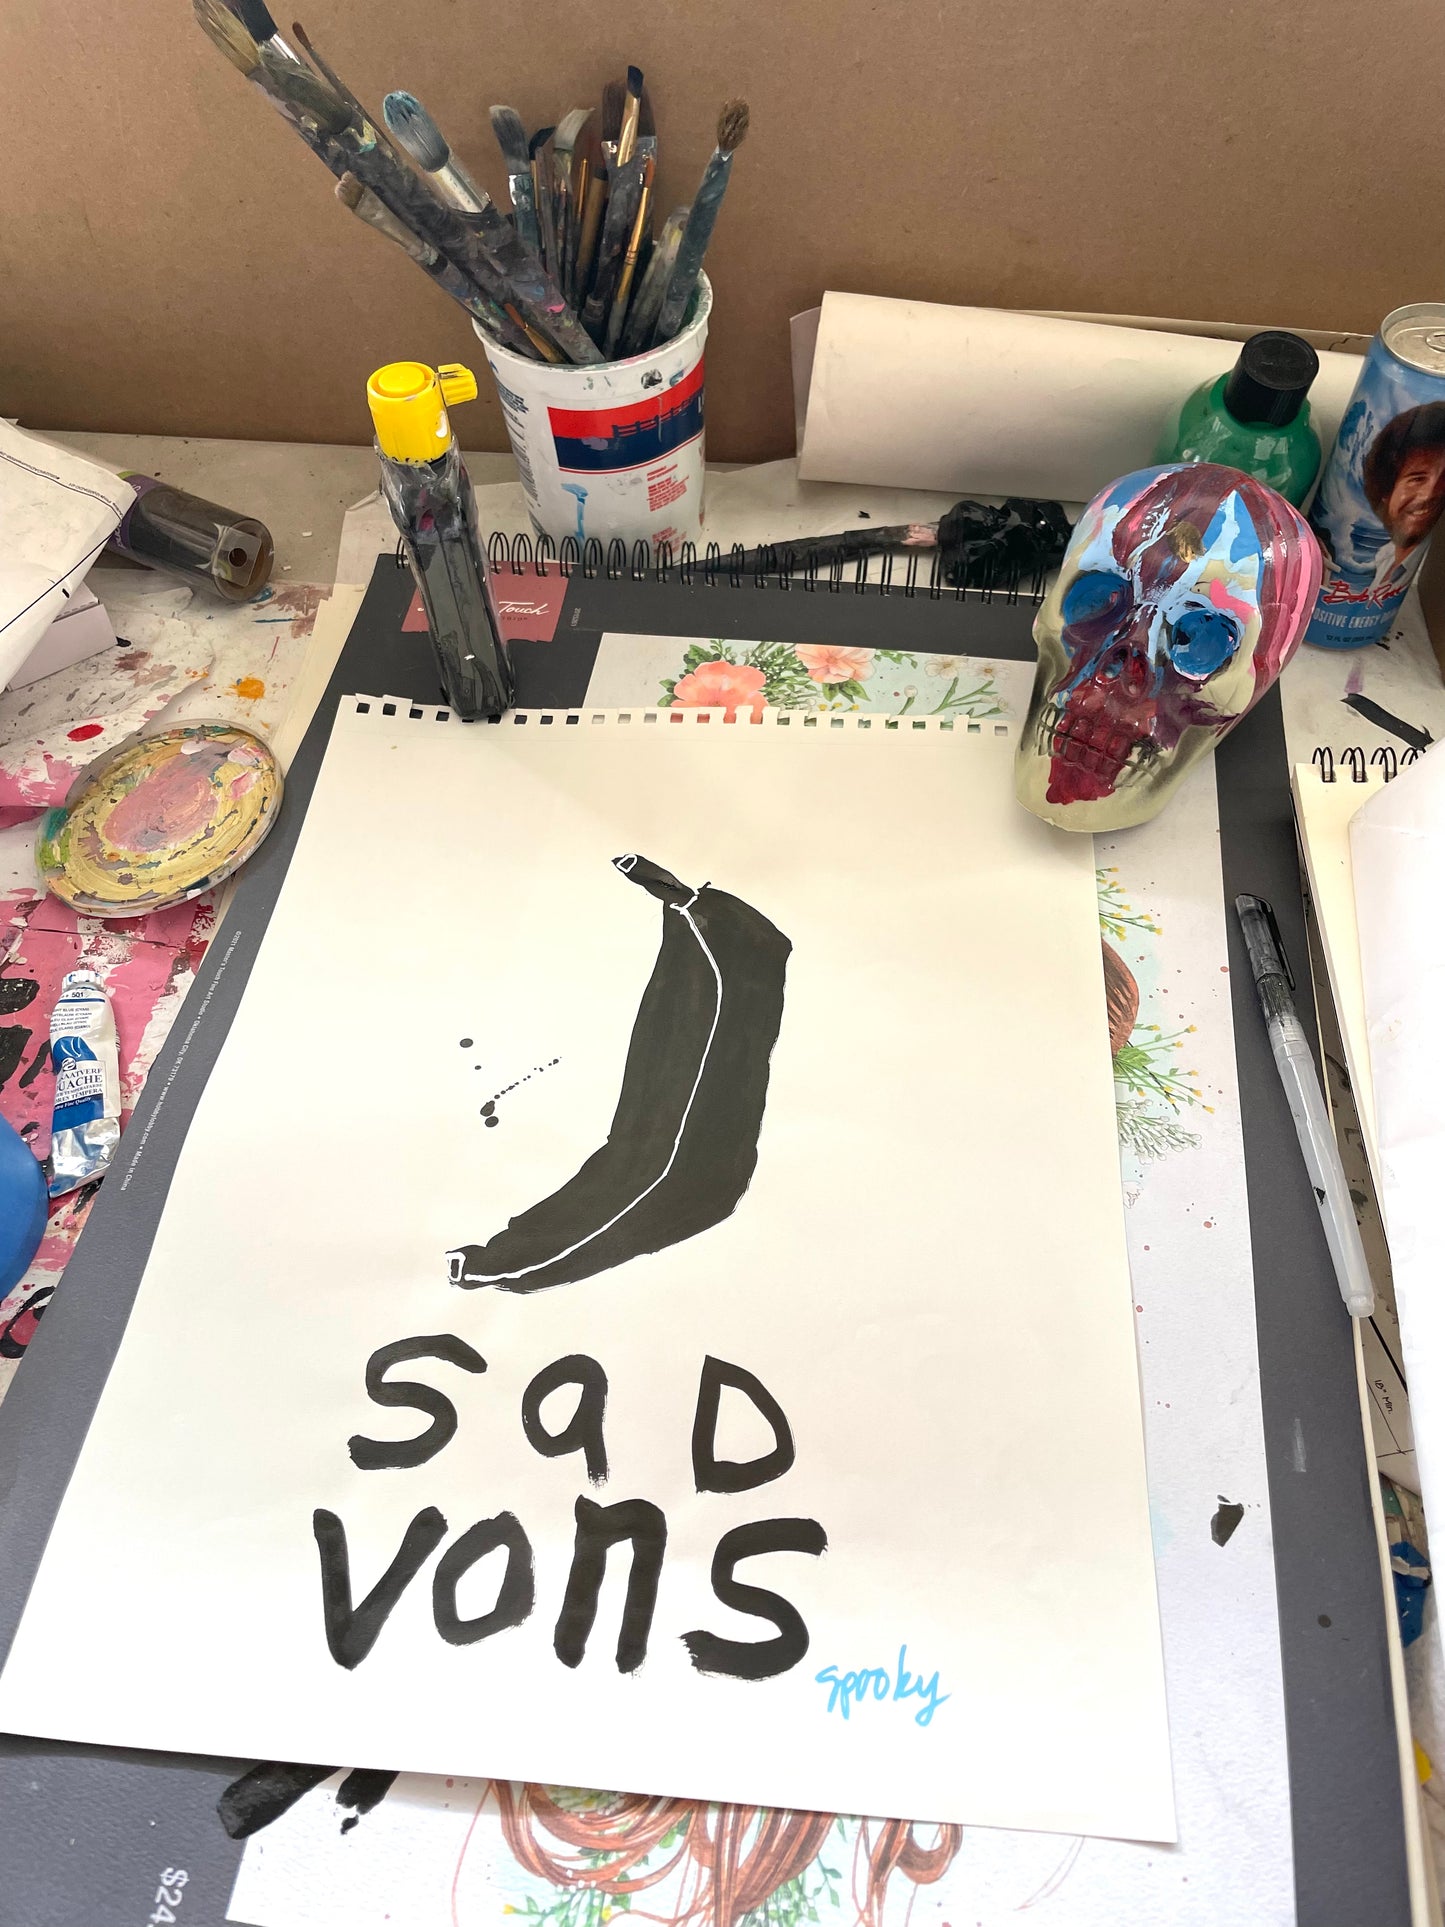 Sad Vons